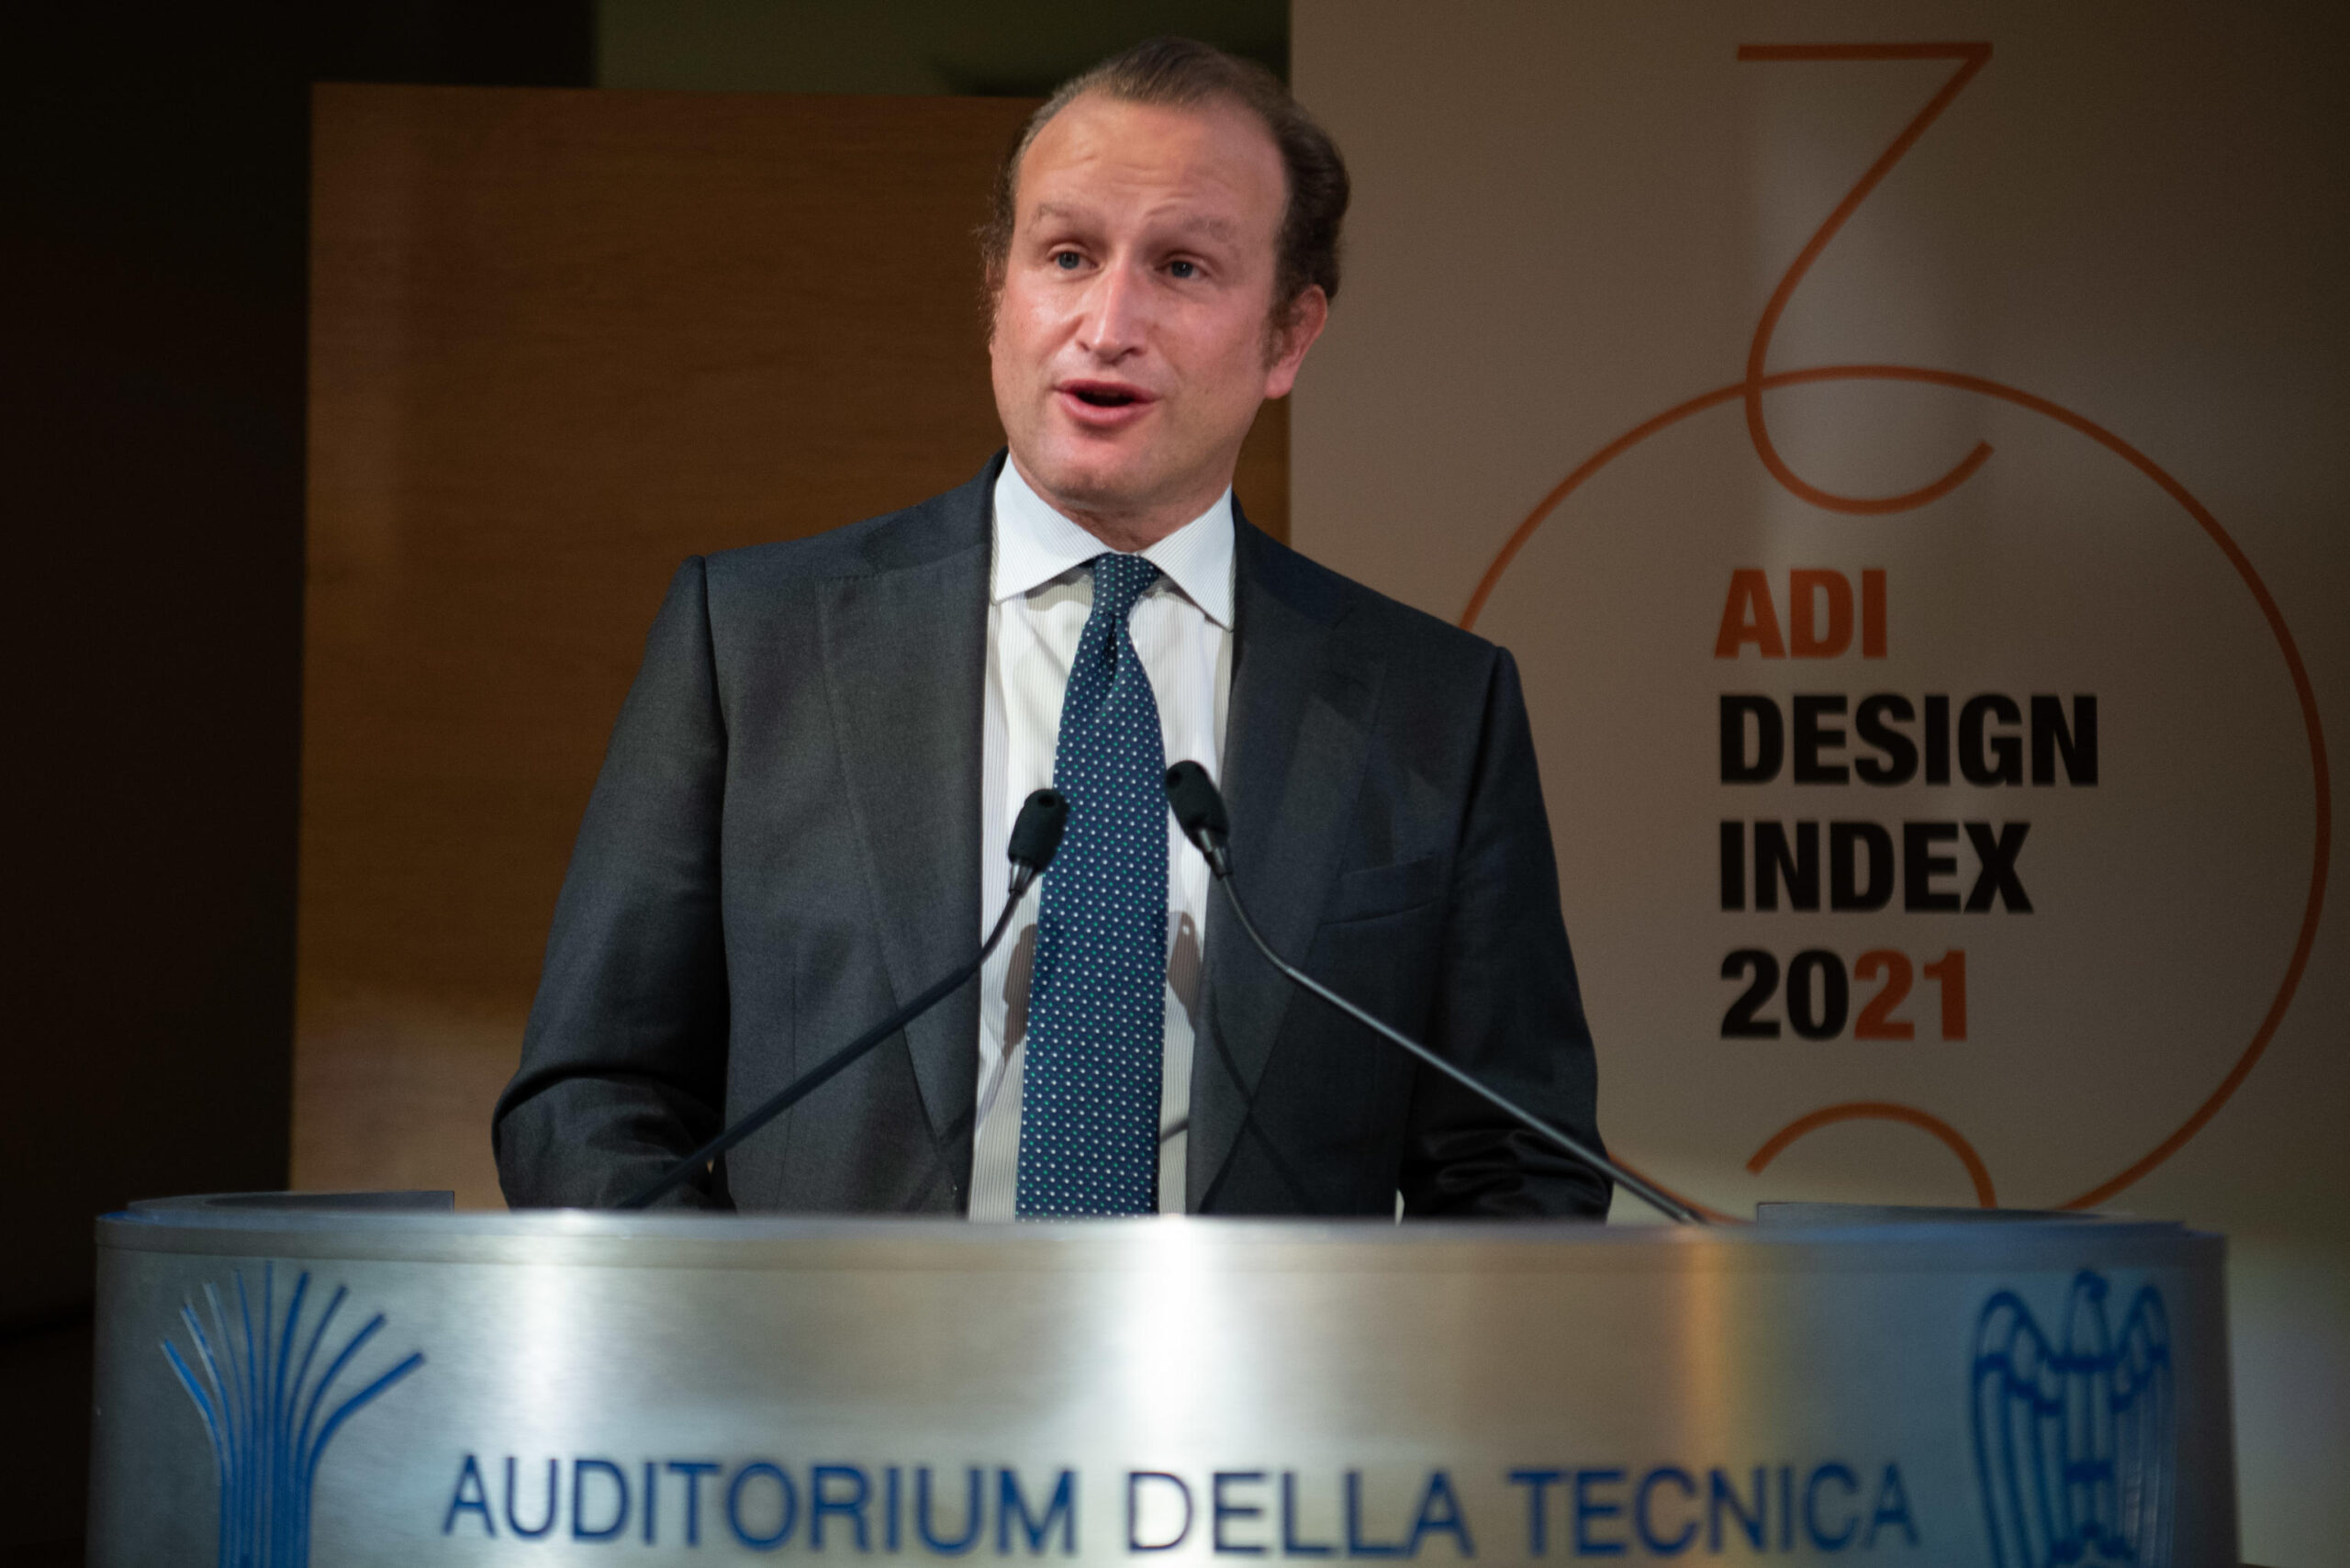 LÕintervento di Alberto Marenghi, presidente Confindustria Servizi, nel corso della cerimonia di inaugurazione della mostra ADI Design Index 2021 a Roma, 18 novembre 2021. MAURIZIO BRAMBATTI/ANSA